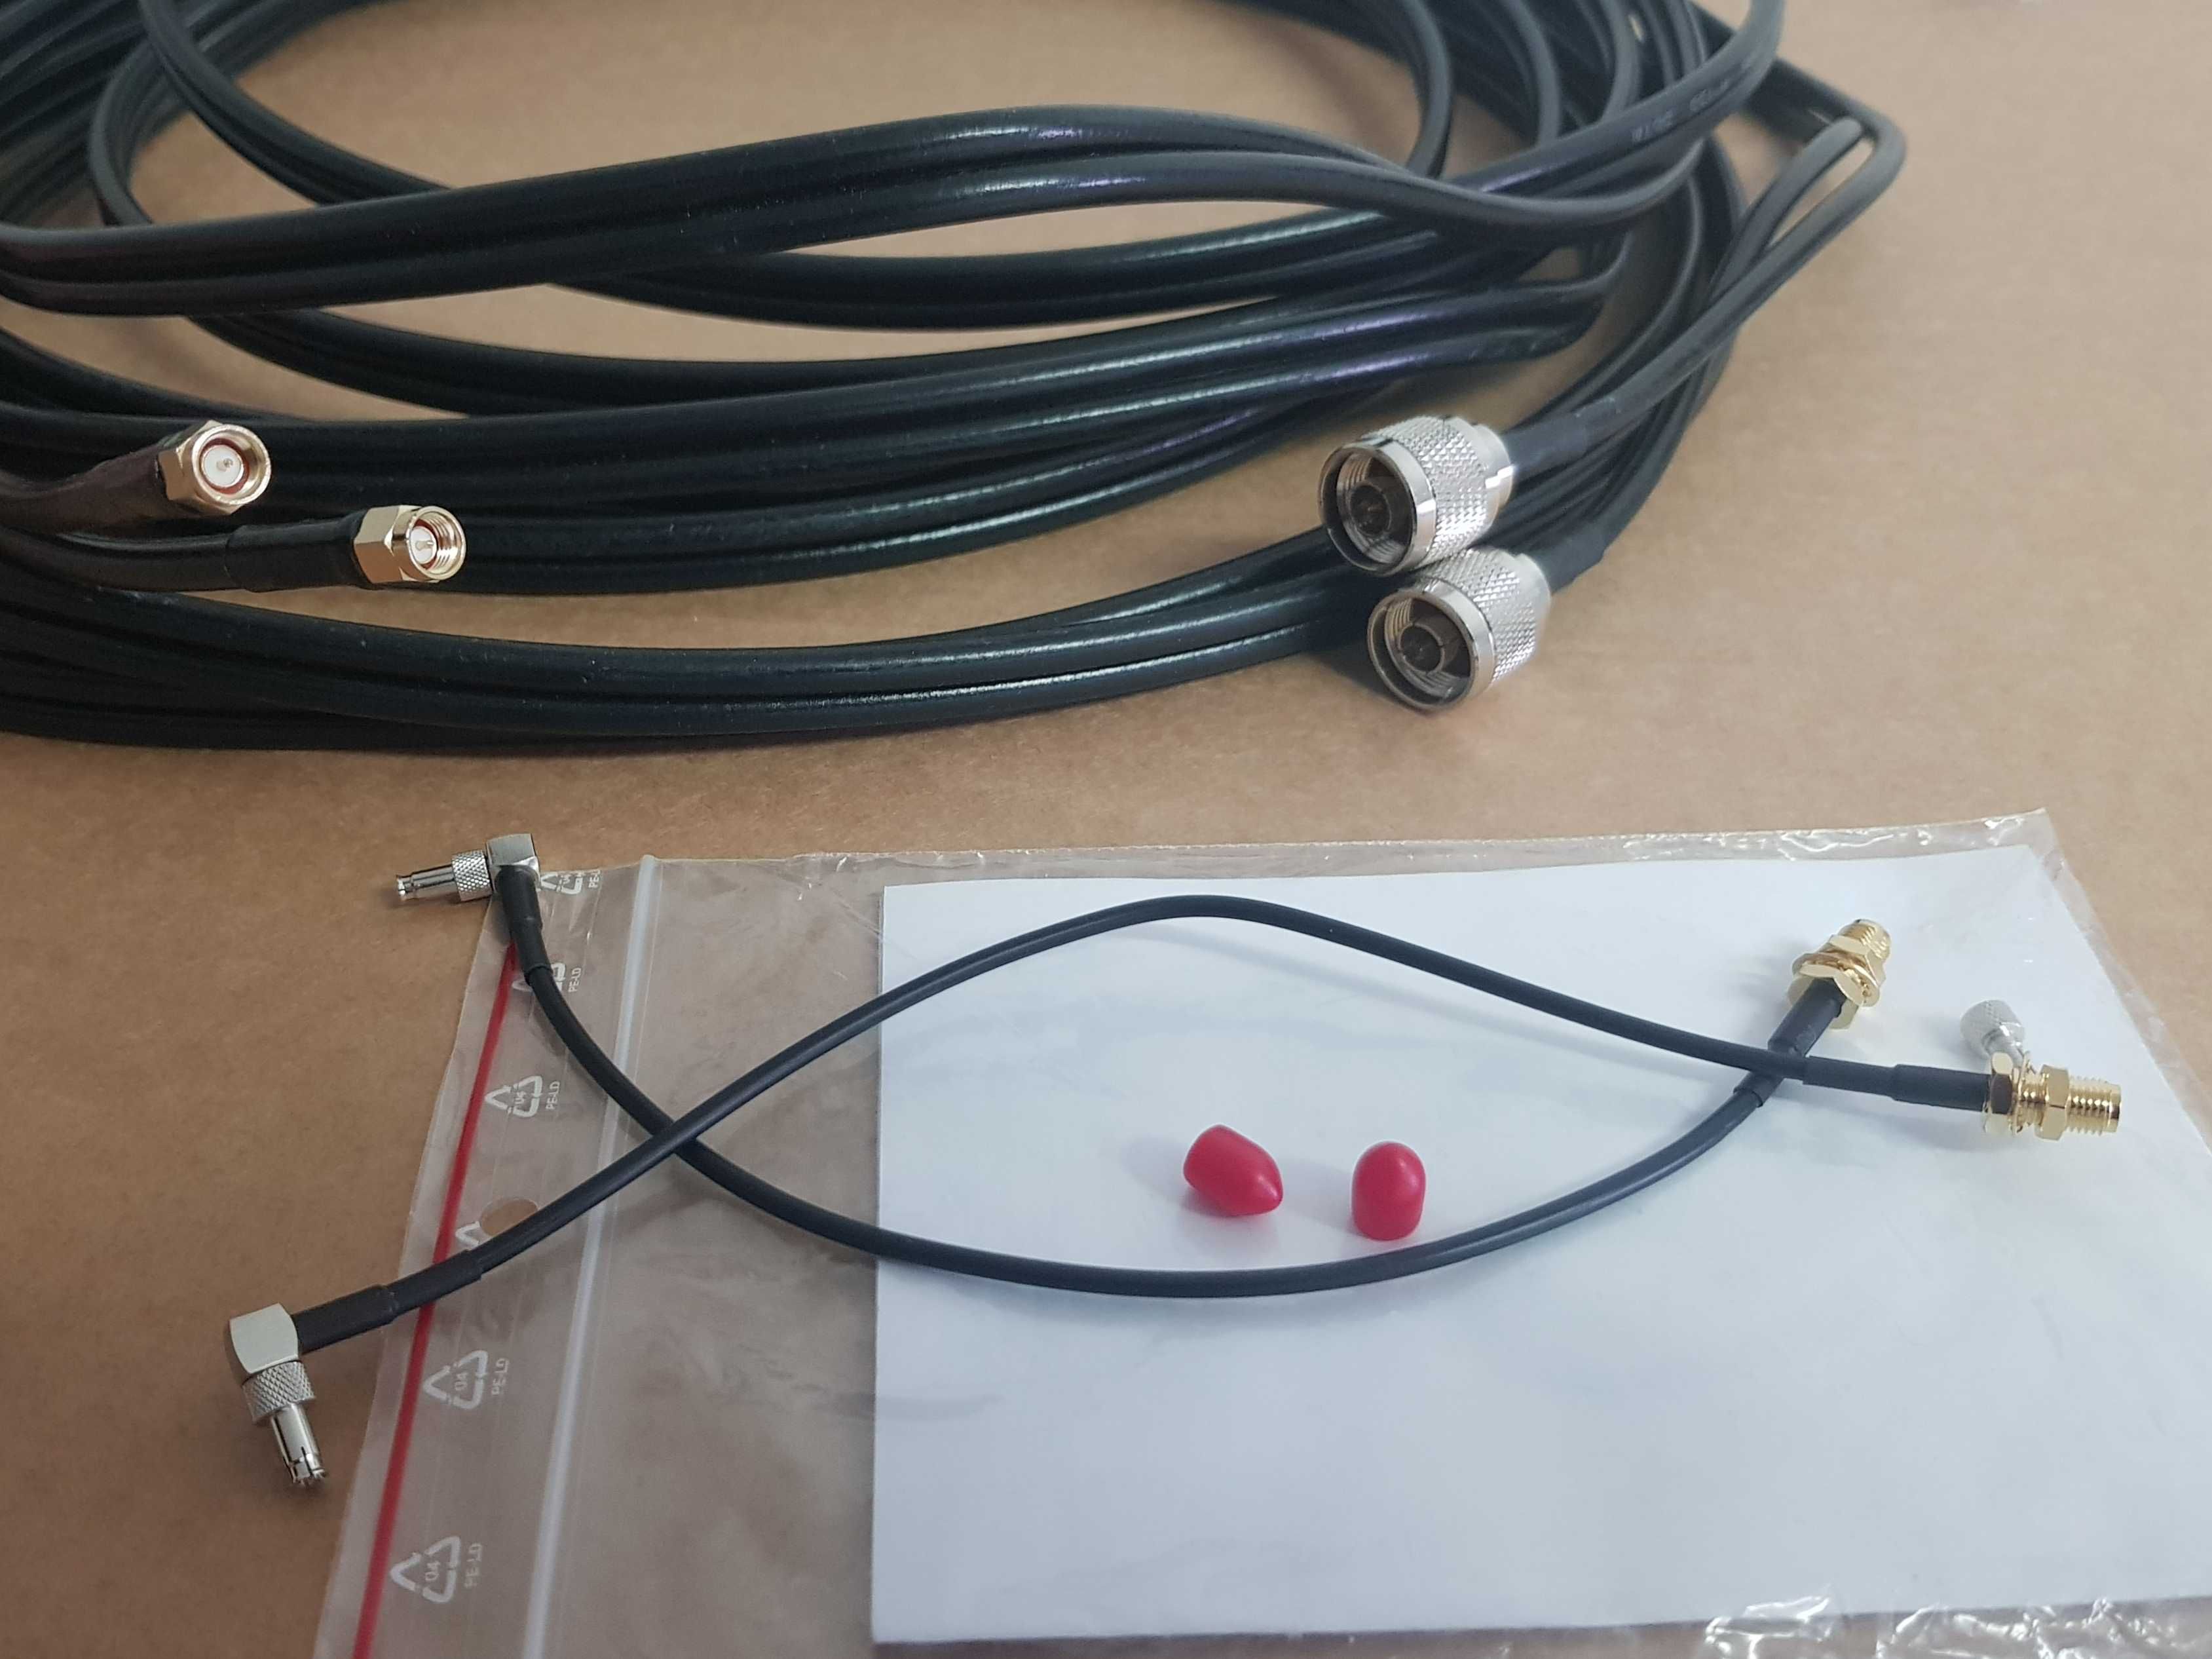 Antena MIMO LTE kierunkowa JAPT 14 dBi + kabel + konektory